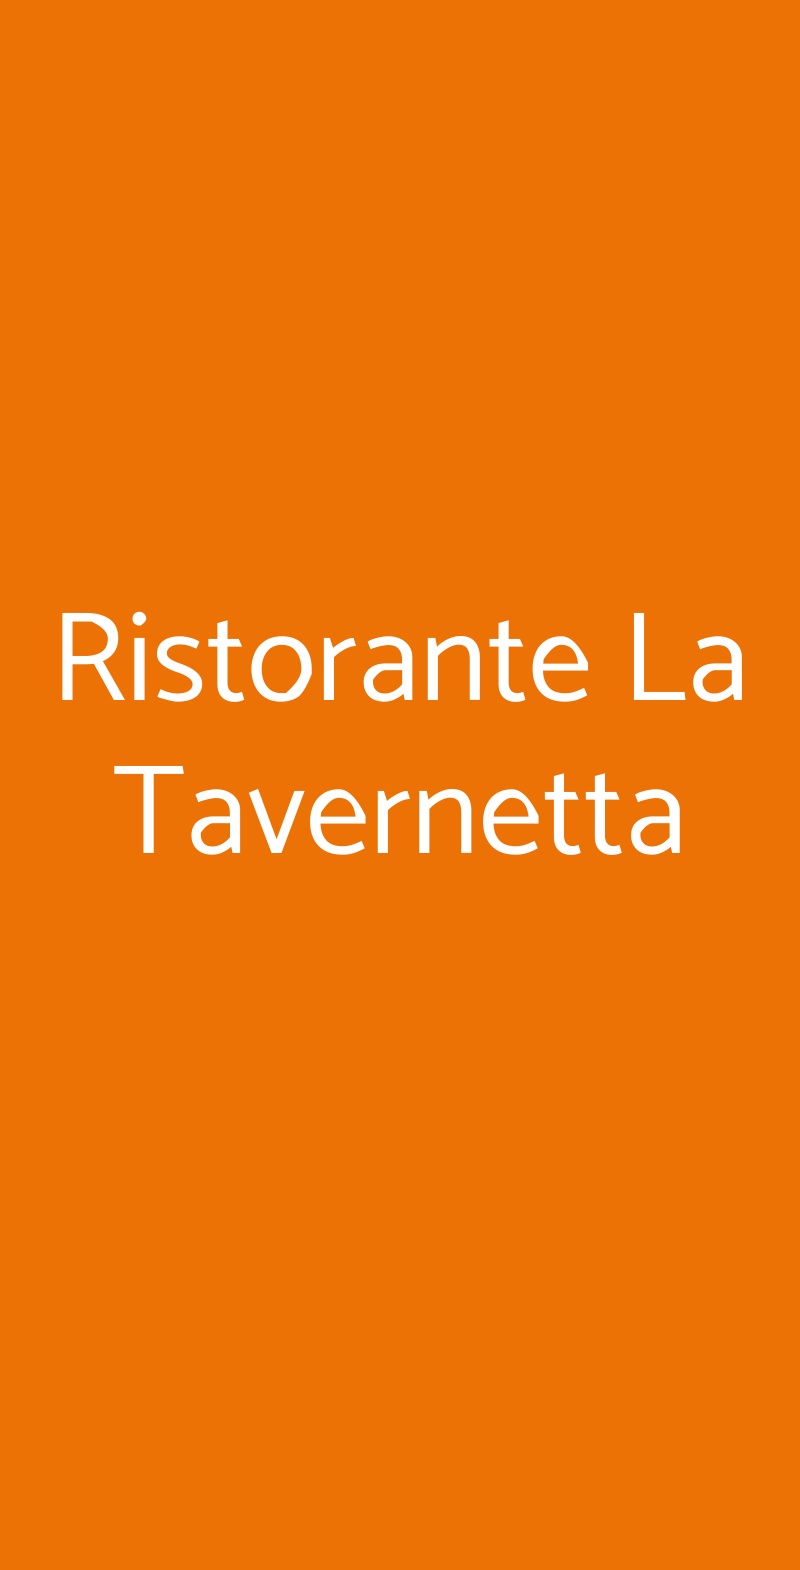 Ristorante La Tavernetta Campiglia Marittima menù 1 pagina